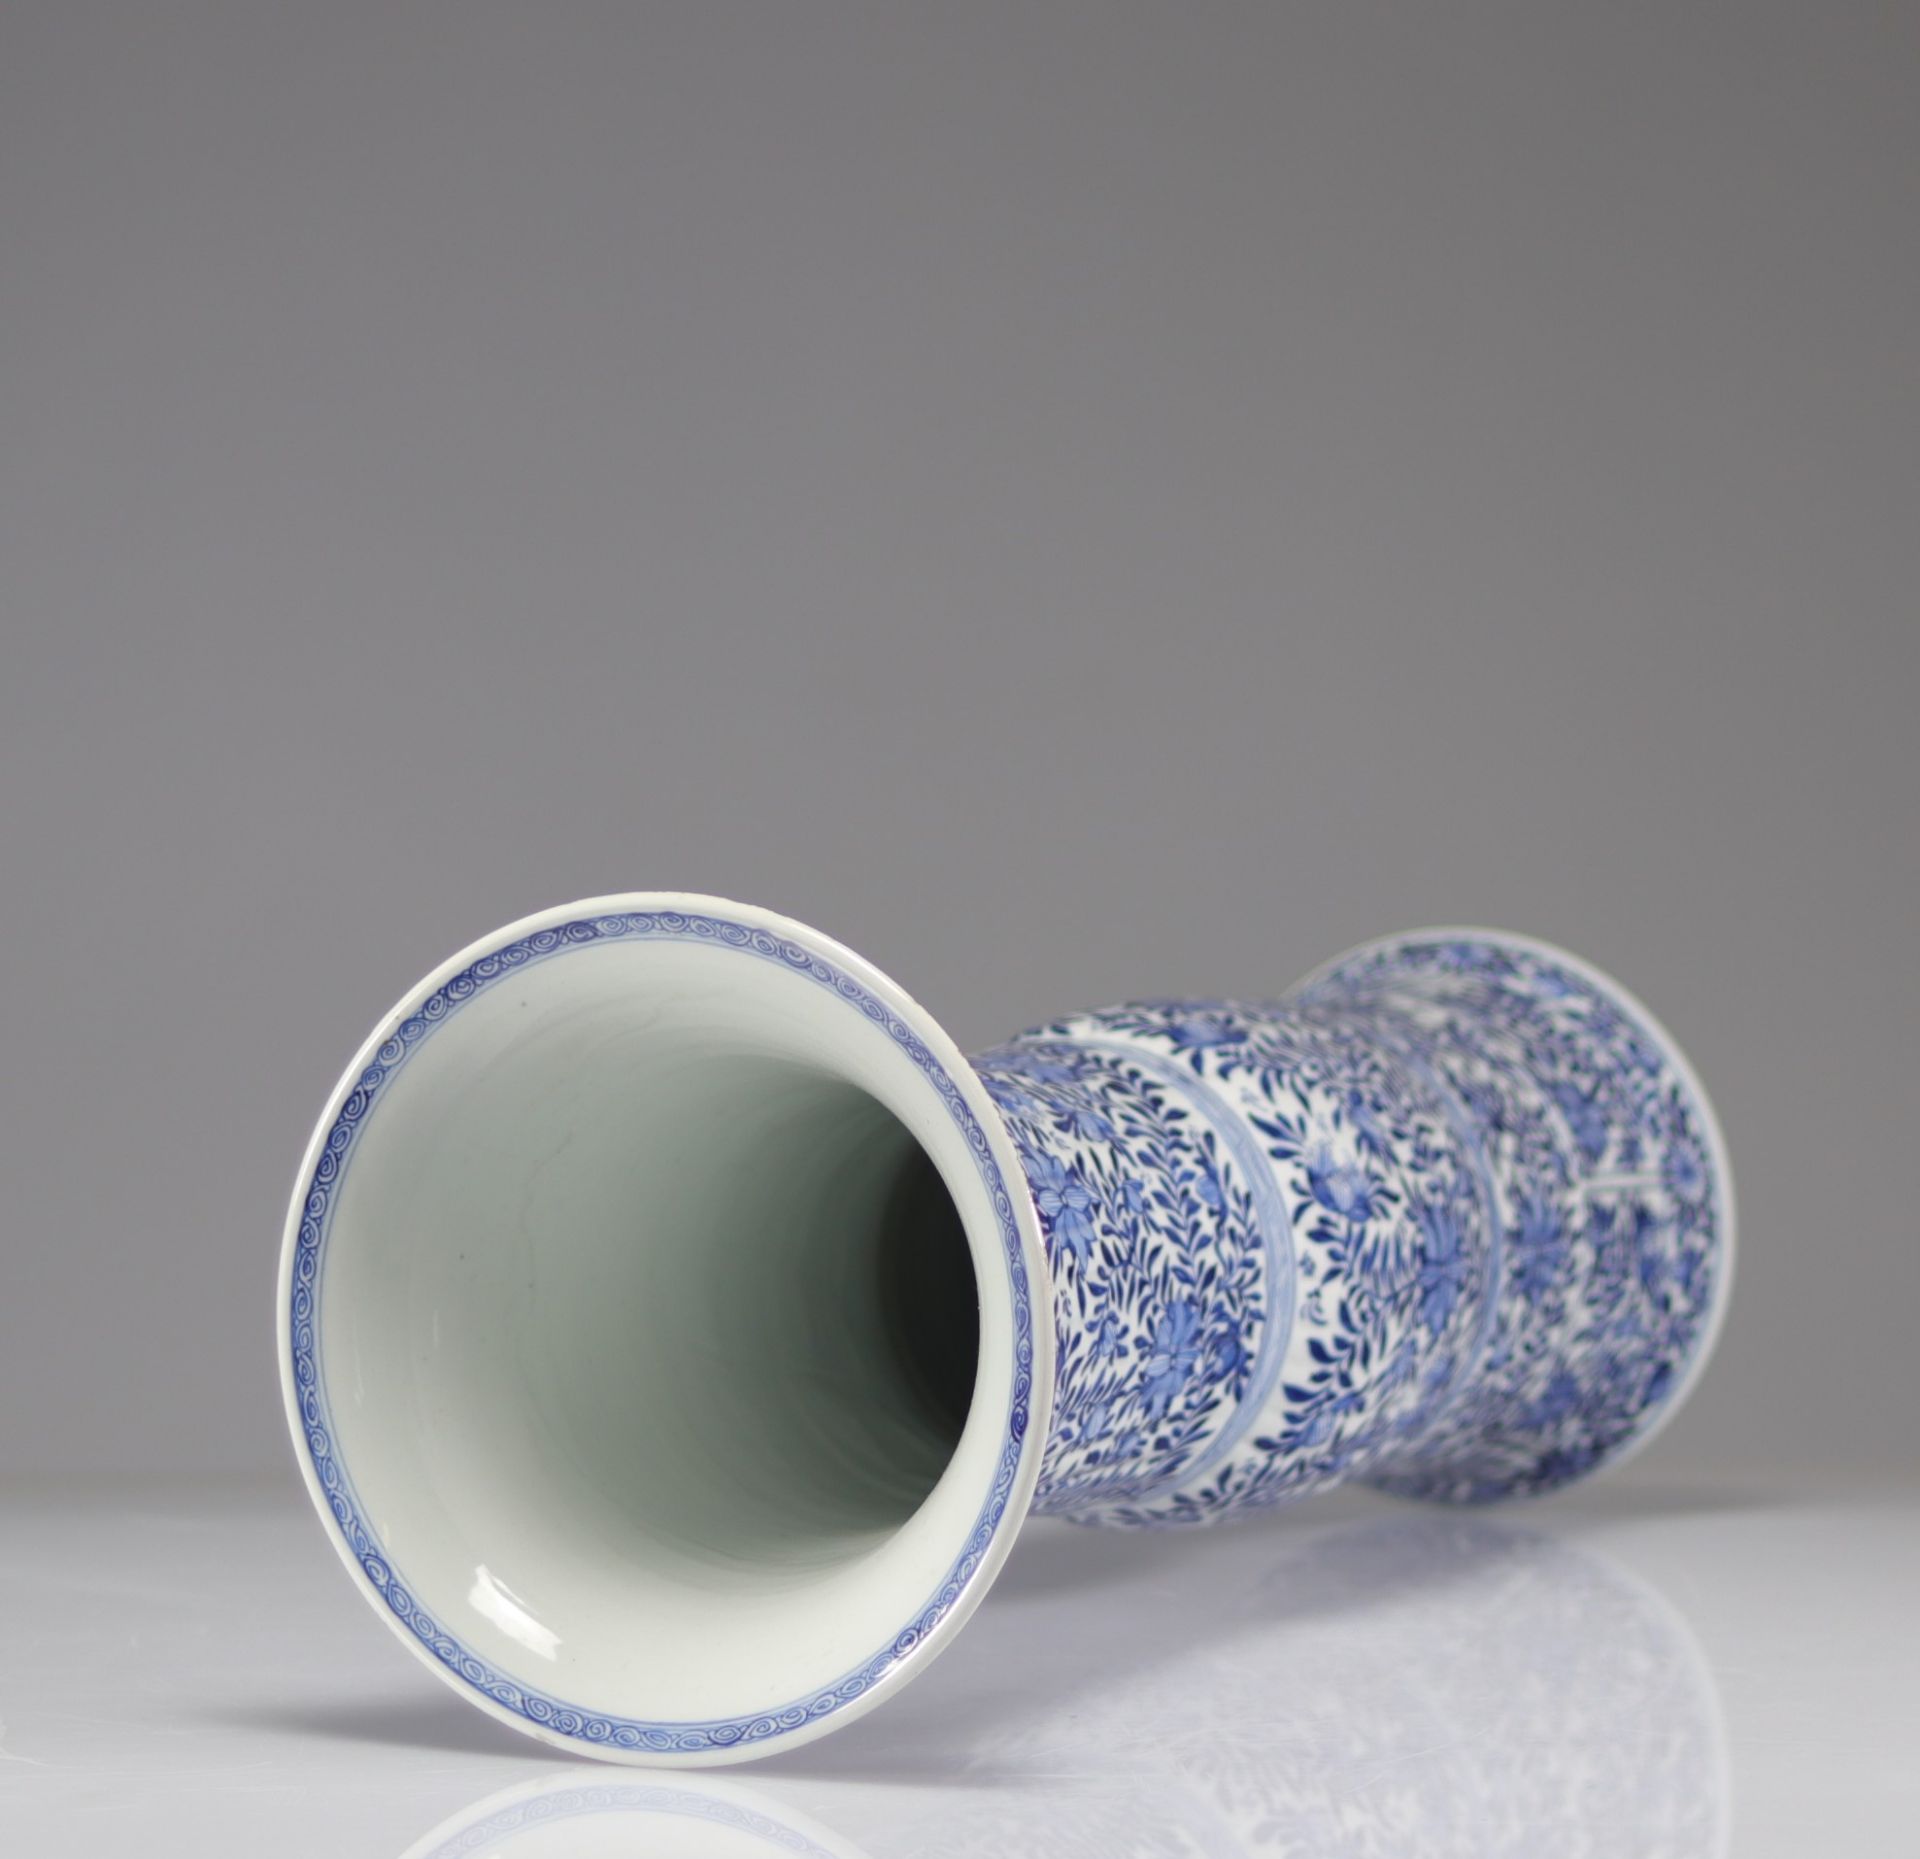 Large blue white Chinese porcelain vase - Image 4 of 4